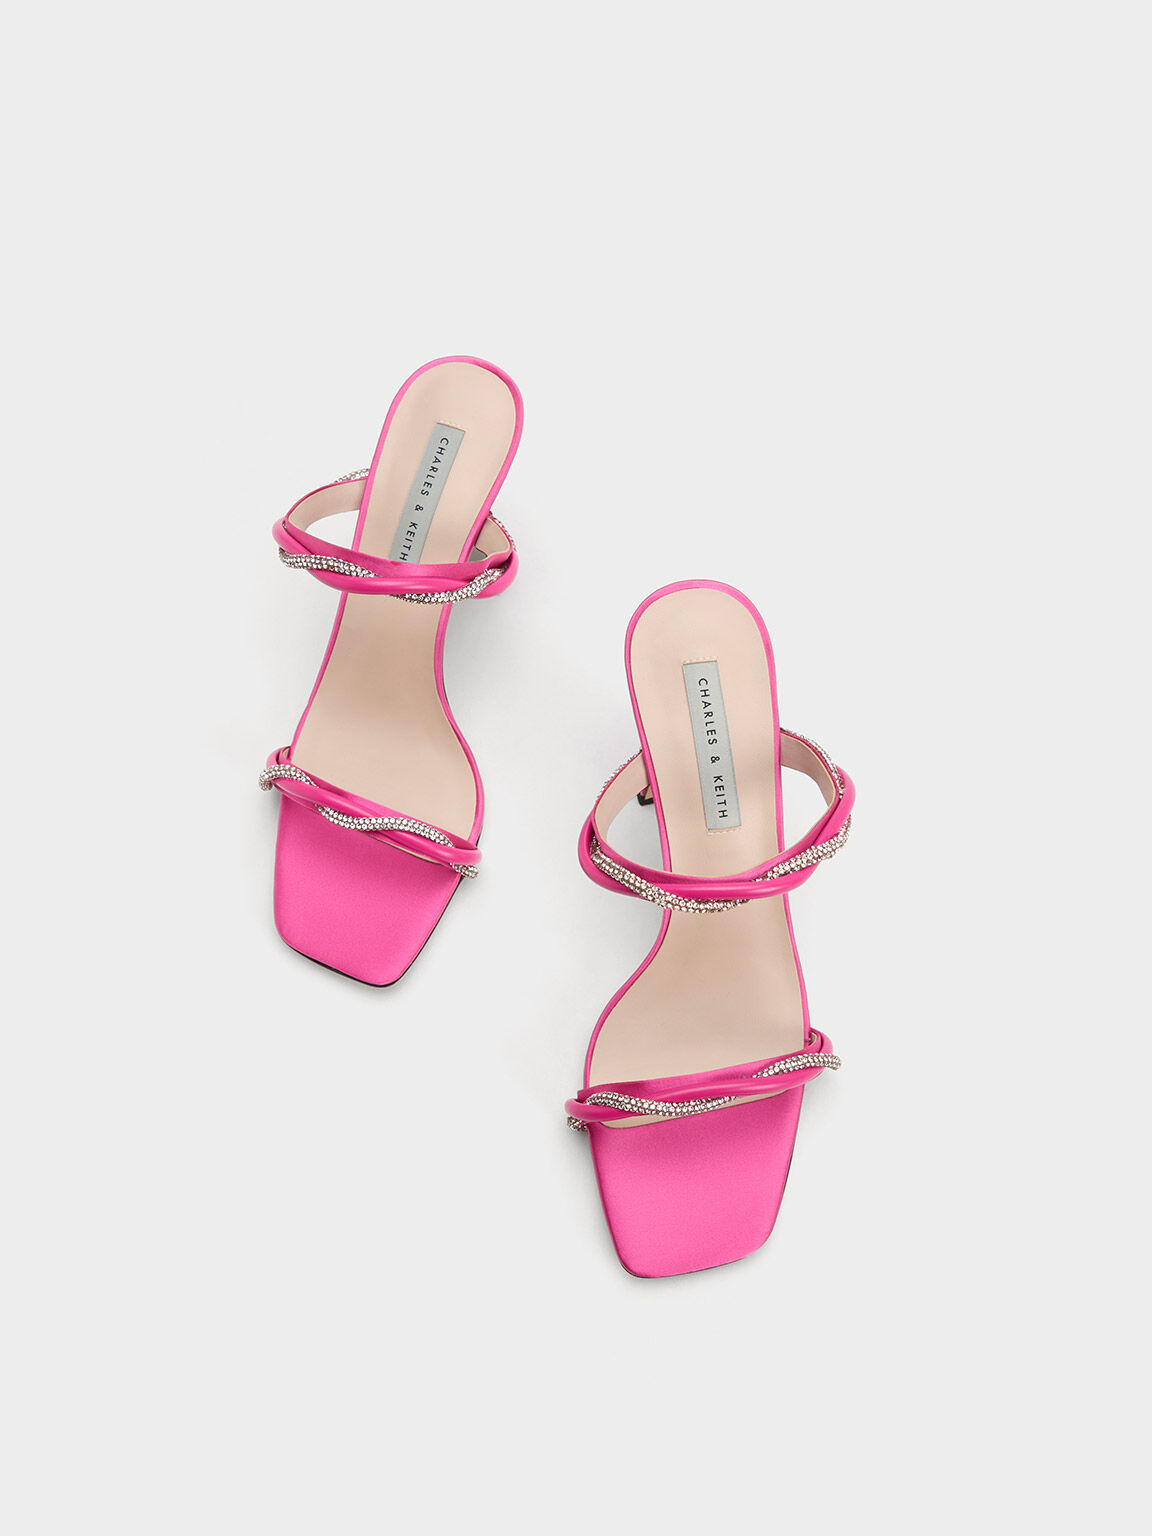 Embellished Twisted Strap Satin Sandals, Pink, hi-res